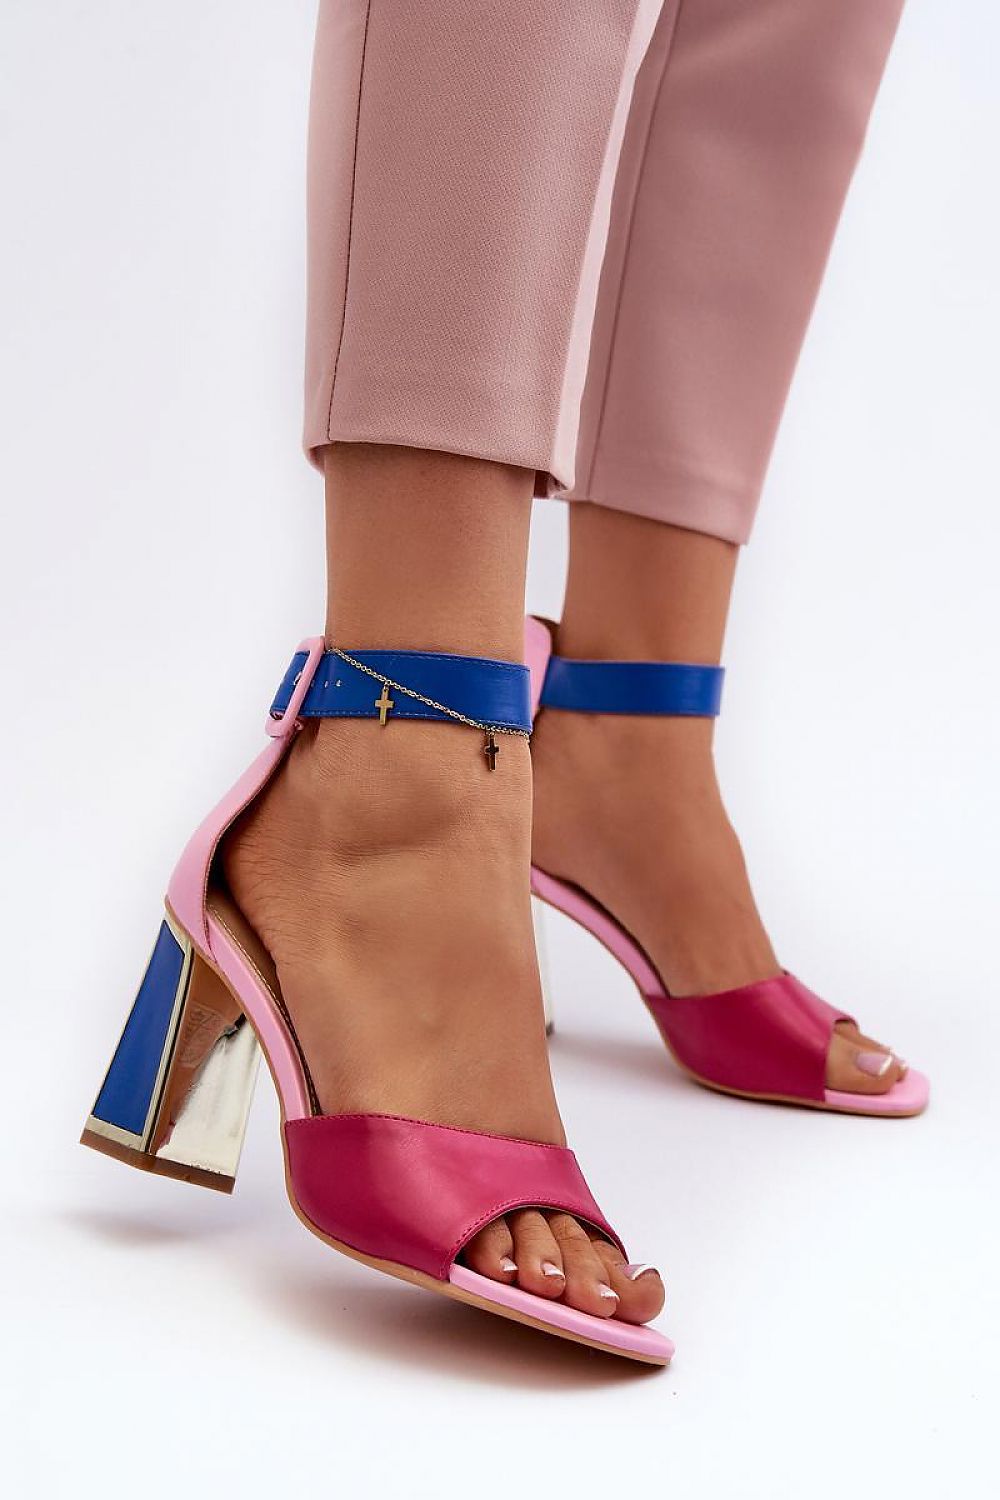 TEEK - Vanity Heel Sandals SHOES TEEK MH pink 6.5 